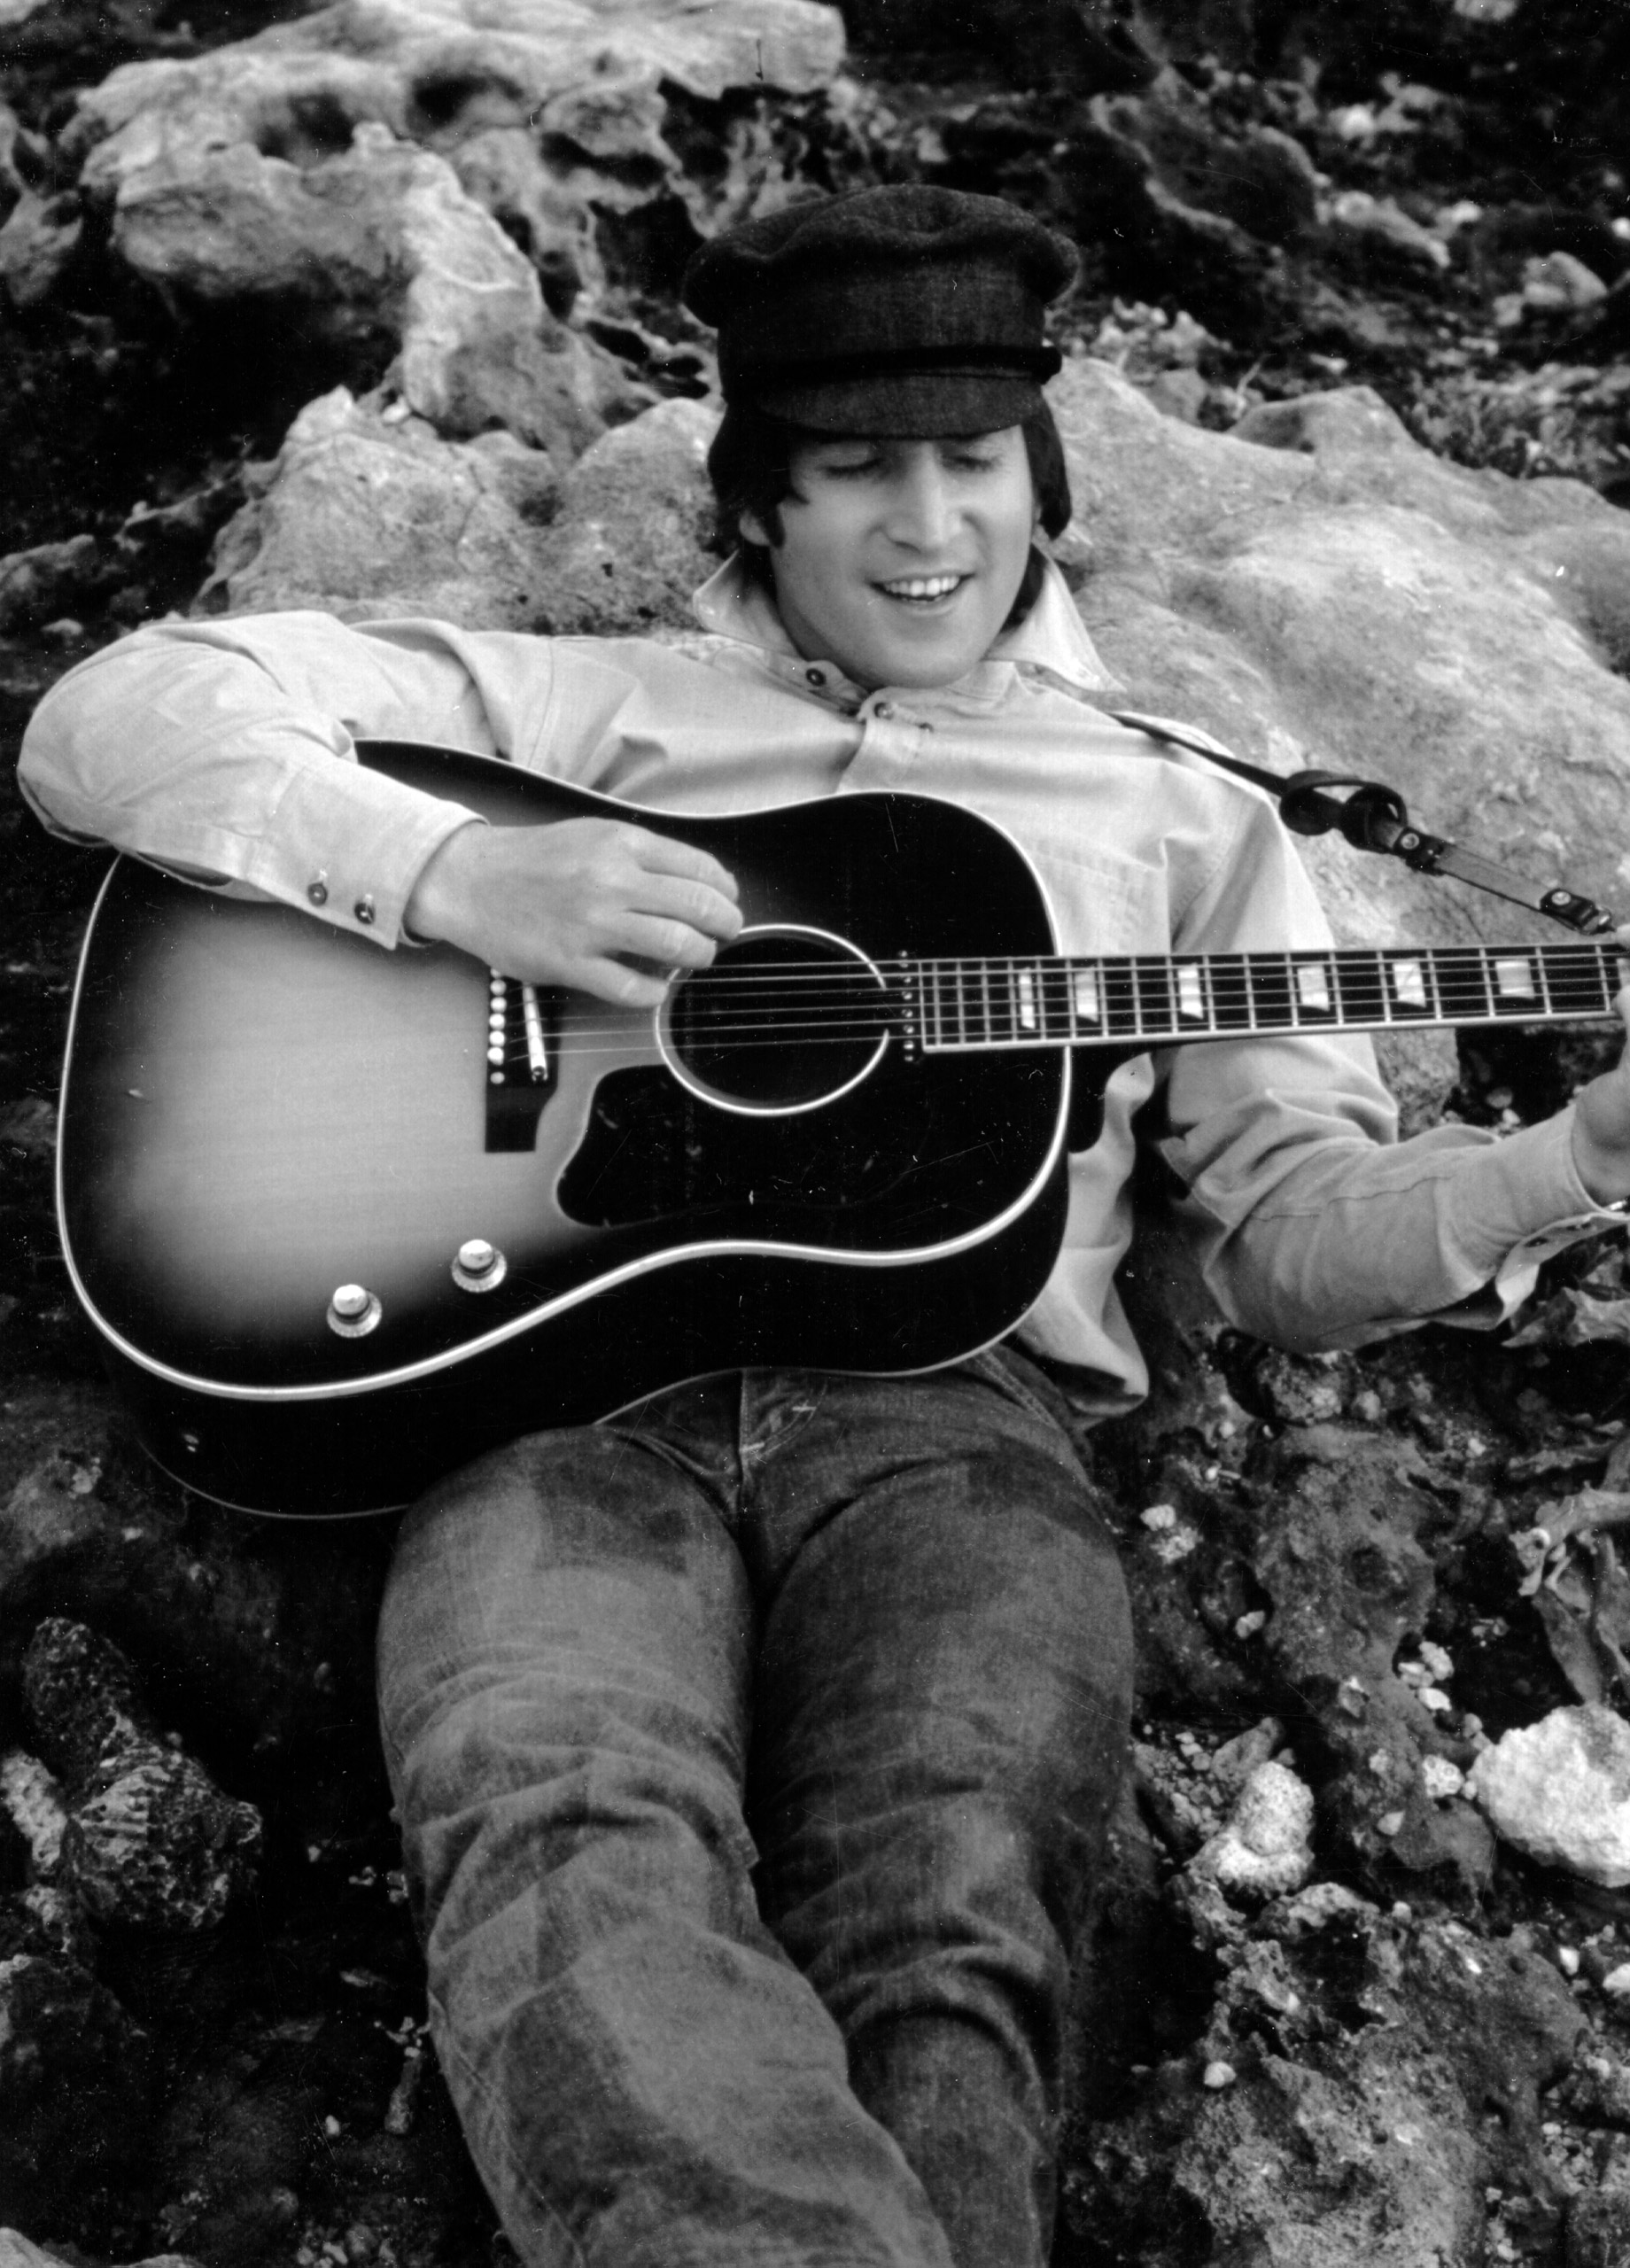 John Lennon playing a Gibson guitar, circa 1964.